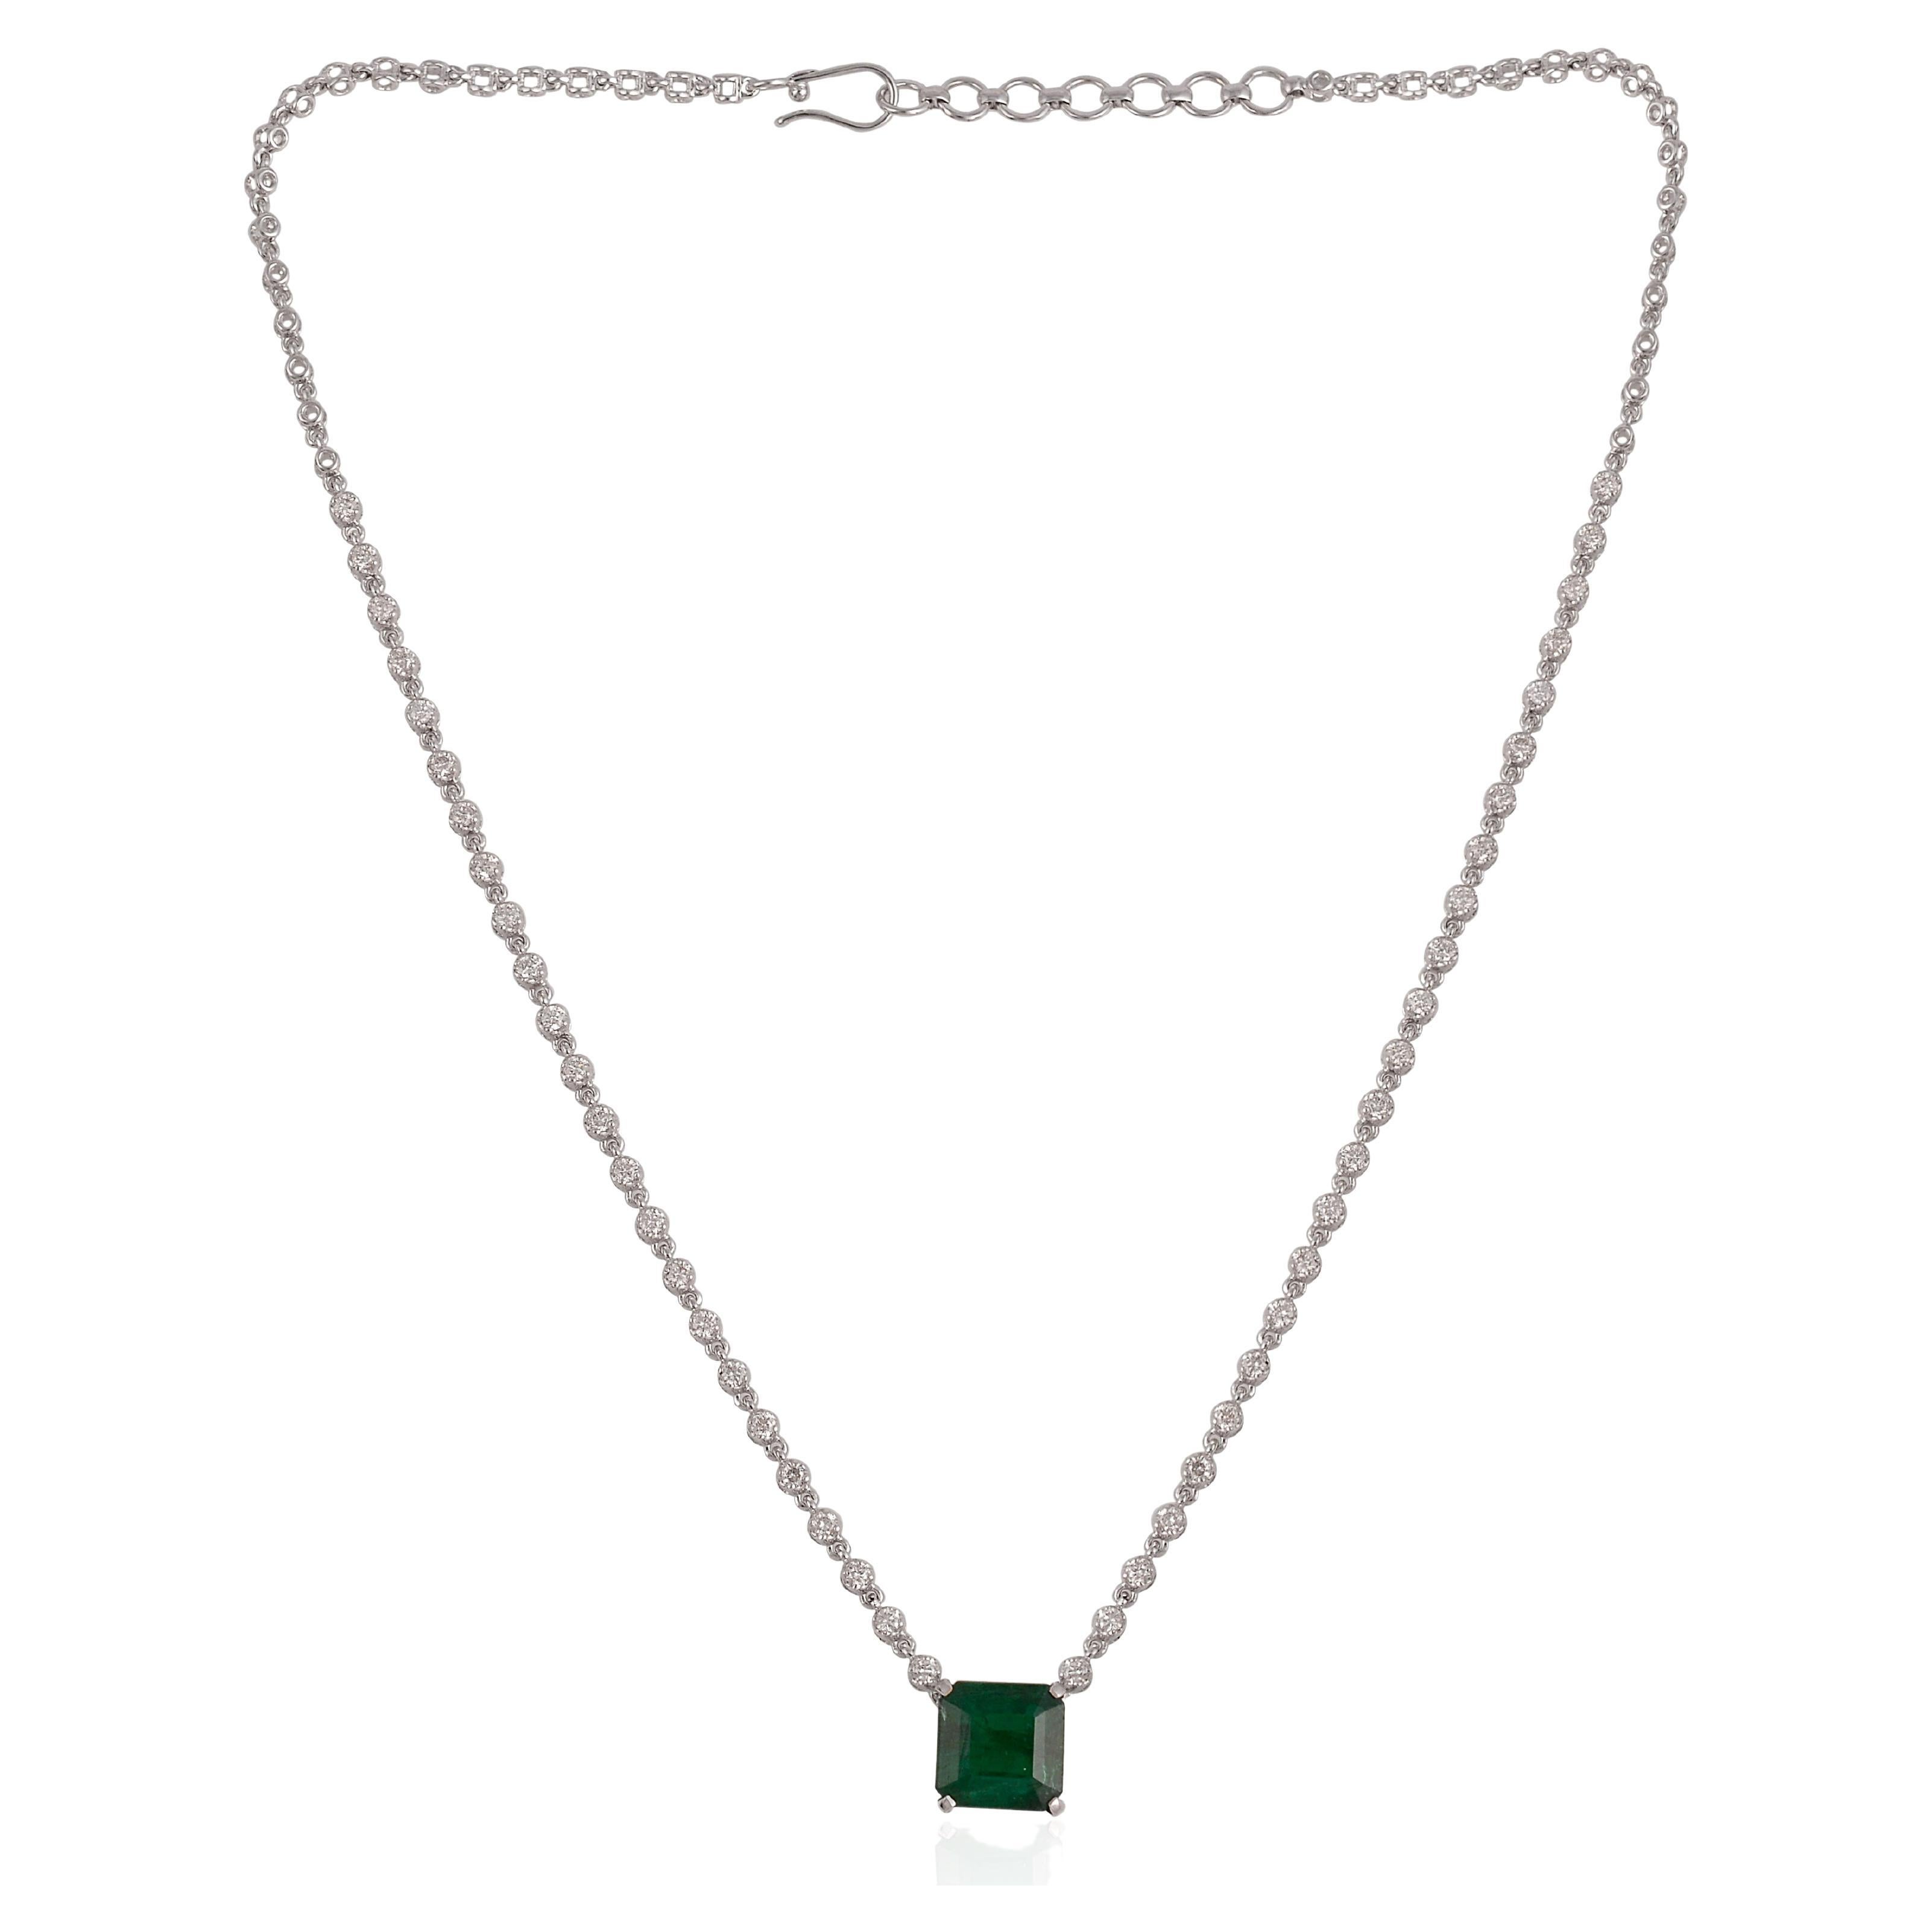 Zambian Emerald Gemstone Pendant Diamond Necklace 18 Karat White Gold Jewelry